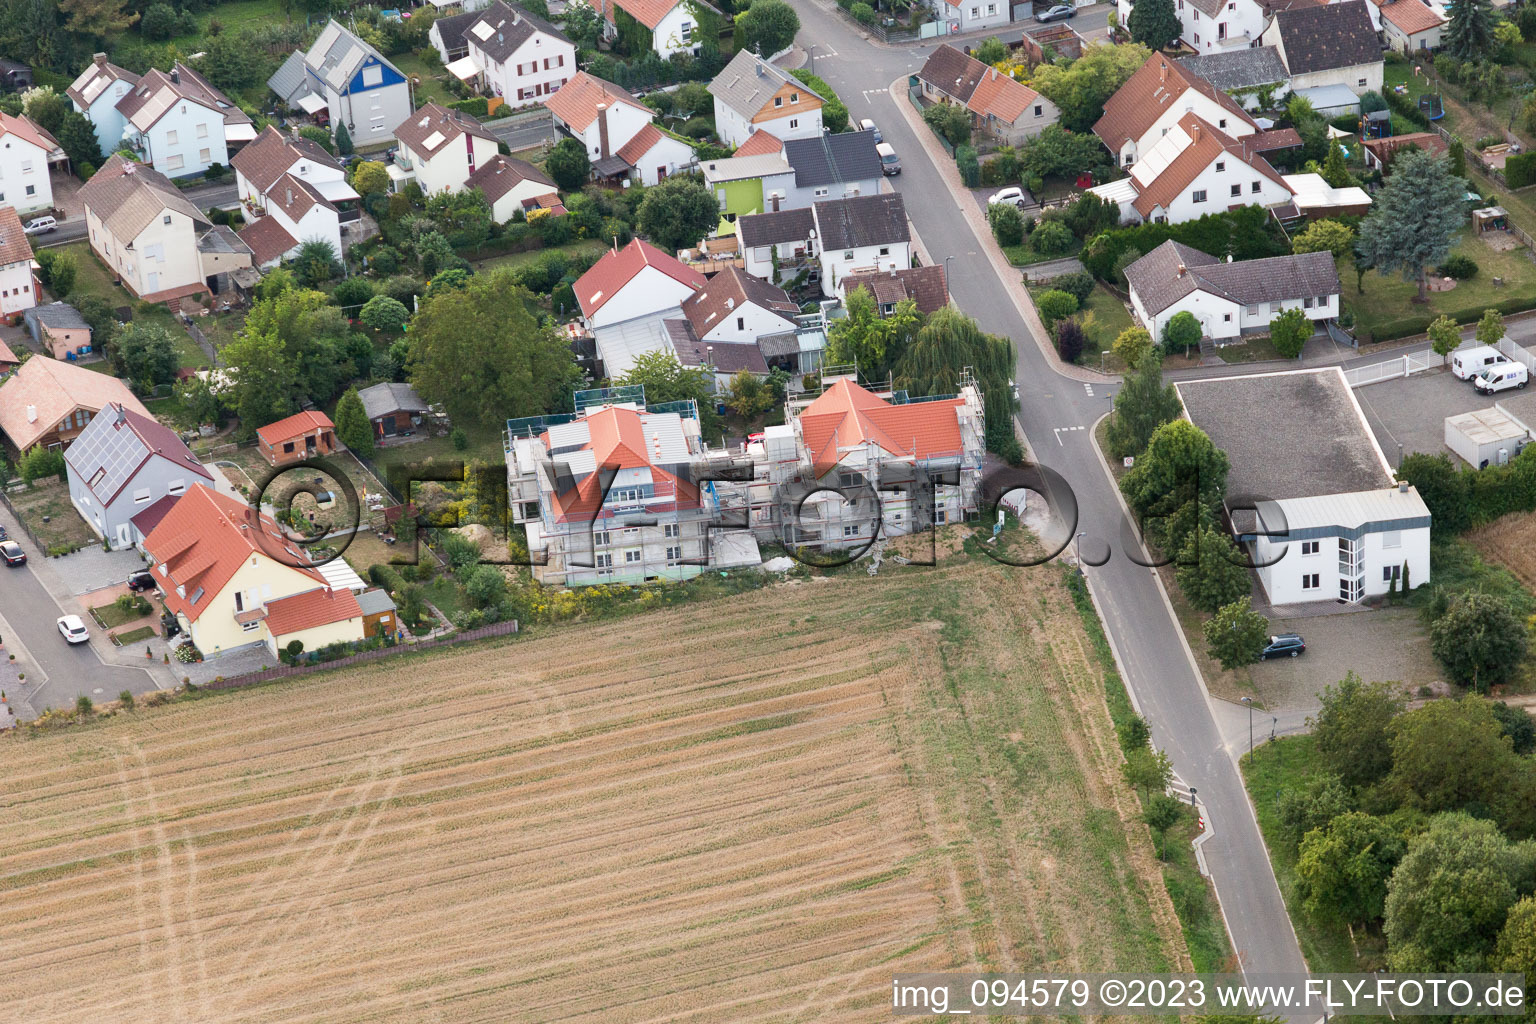 District Mörzheim in Landau in der Pfalz in the state Rhineland-Palatinate, Germany from a drone